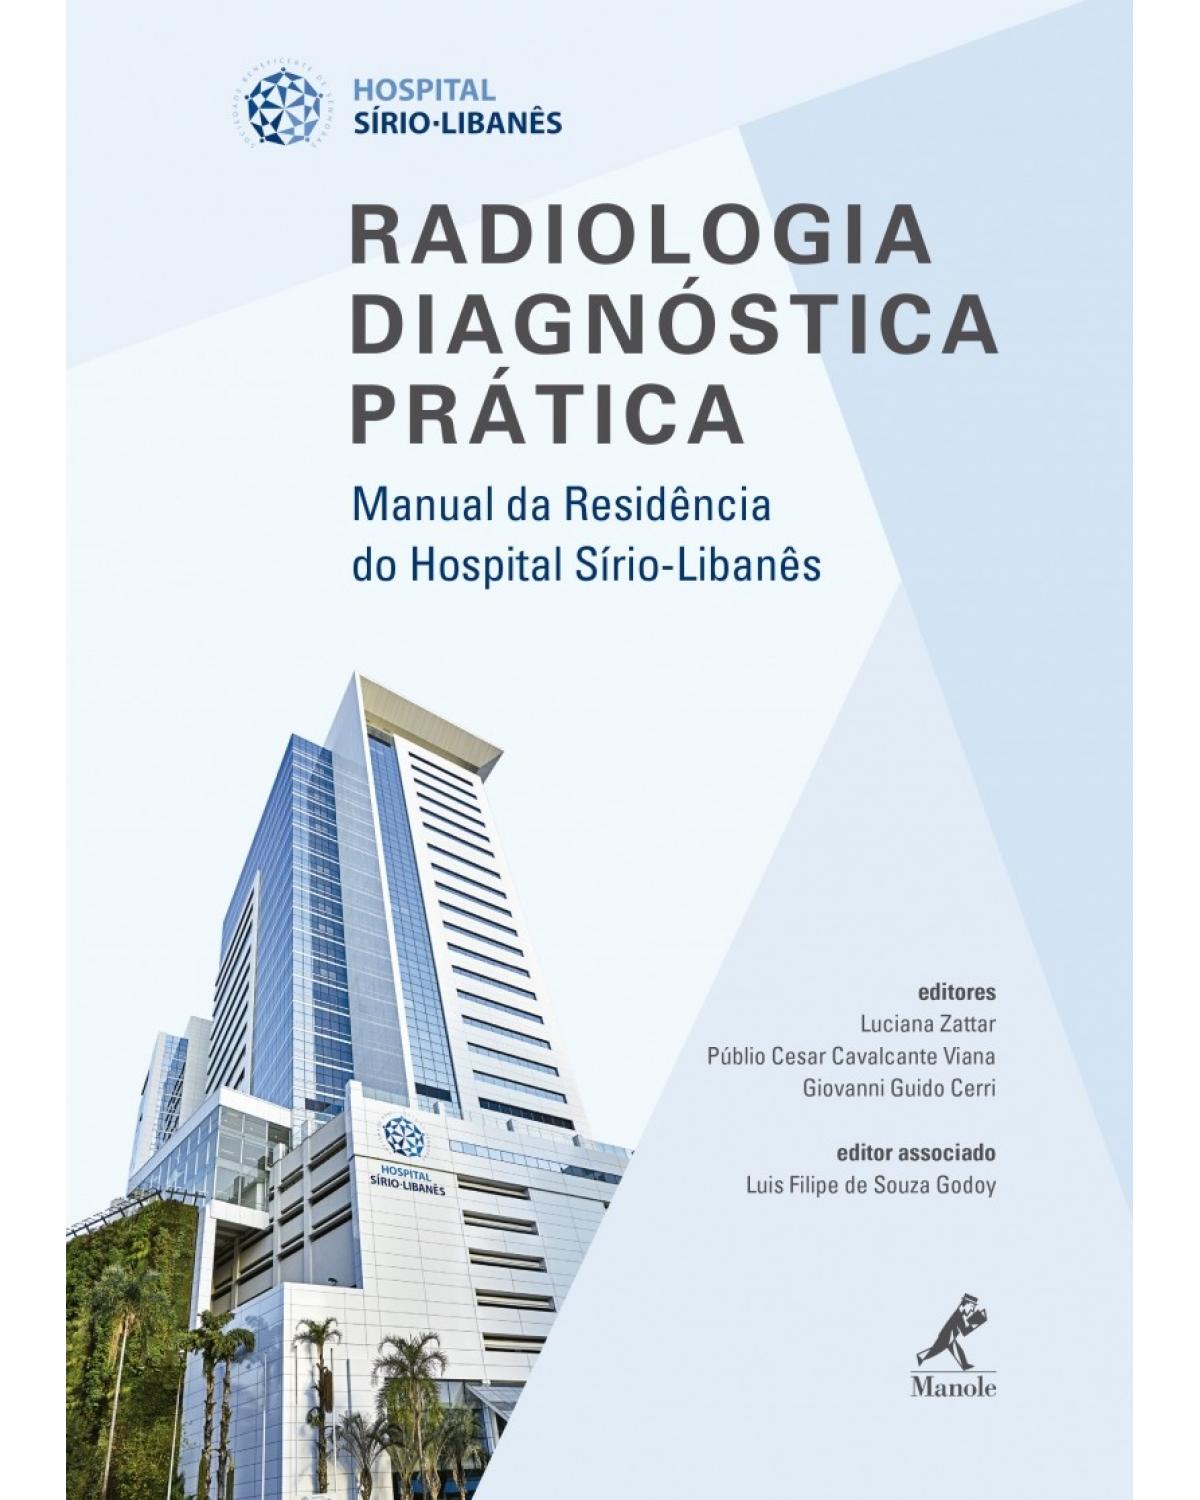 Radiologia diagnóstica prática - Manual da residência do Hospital Sírio-Libanês - 1ª Edição | 2017